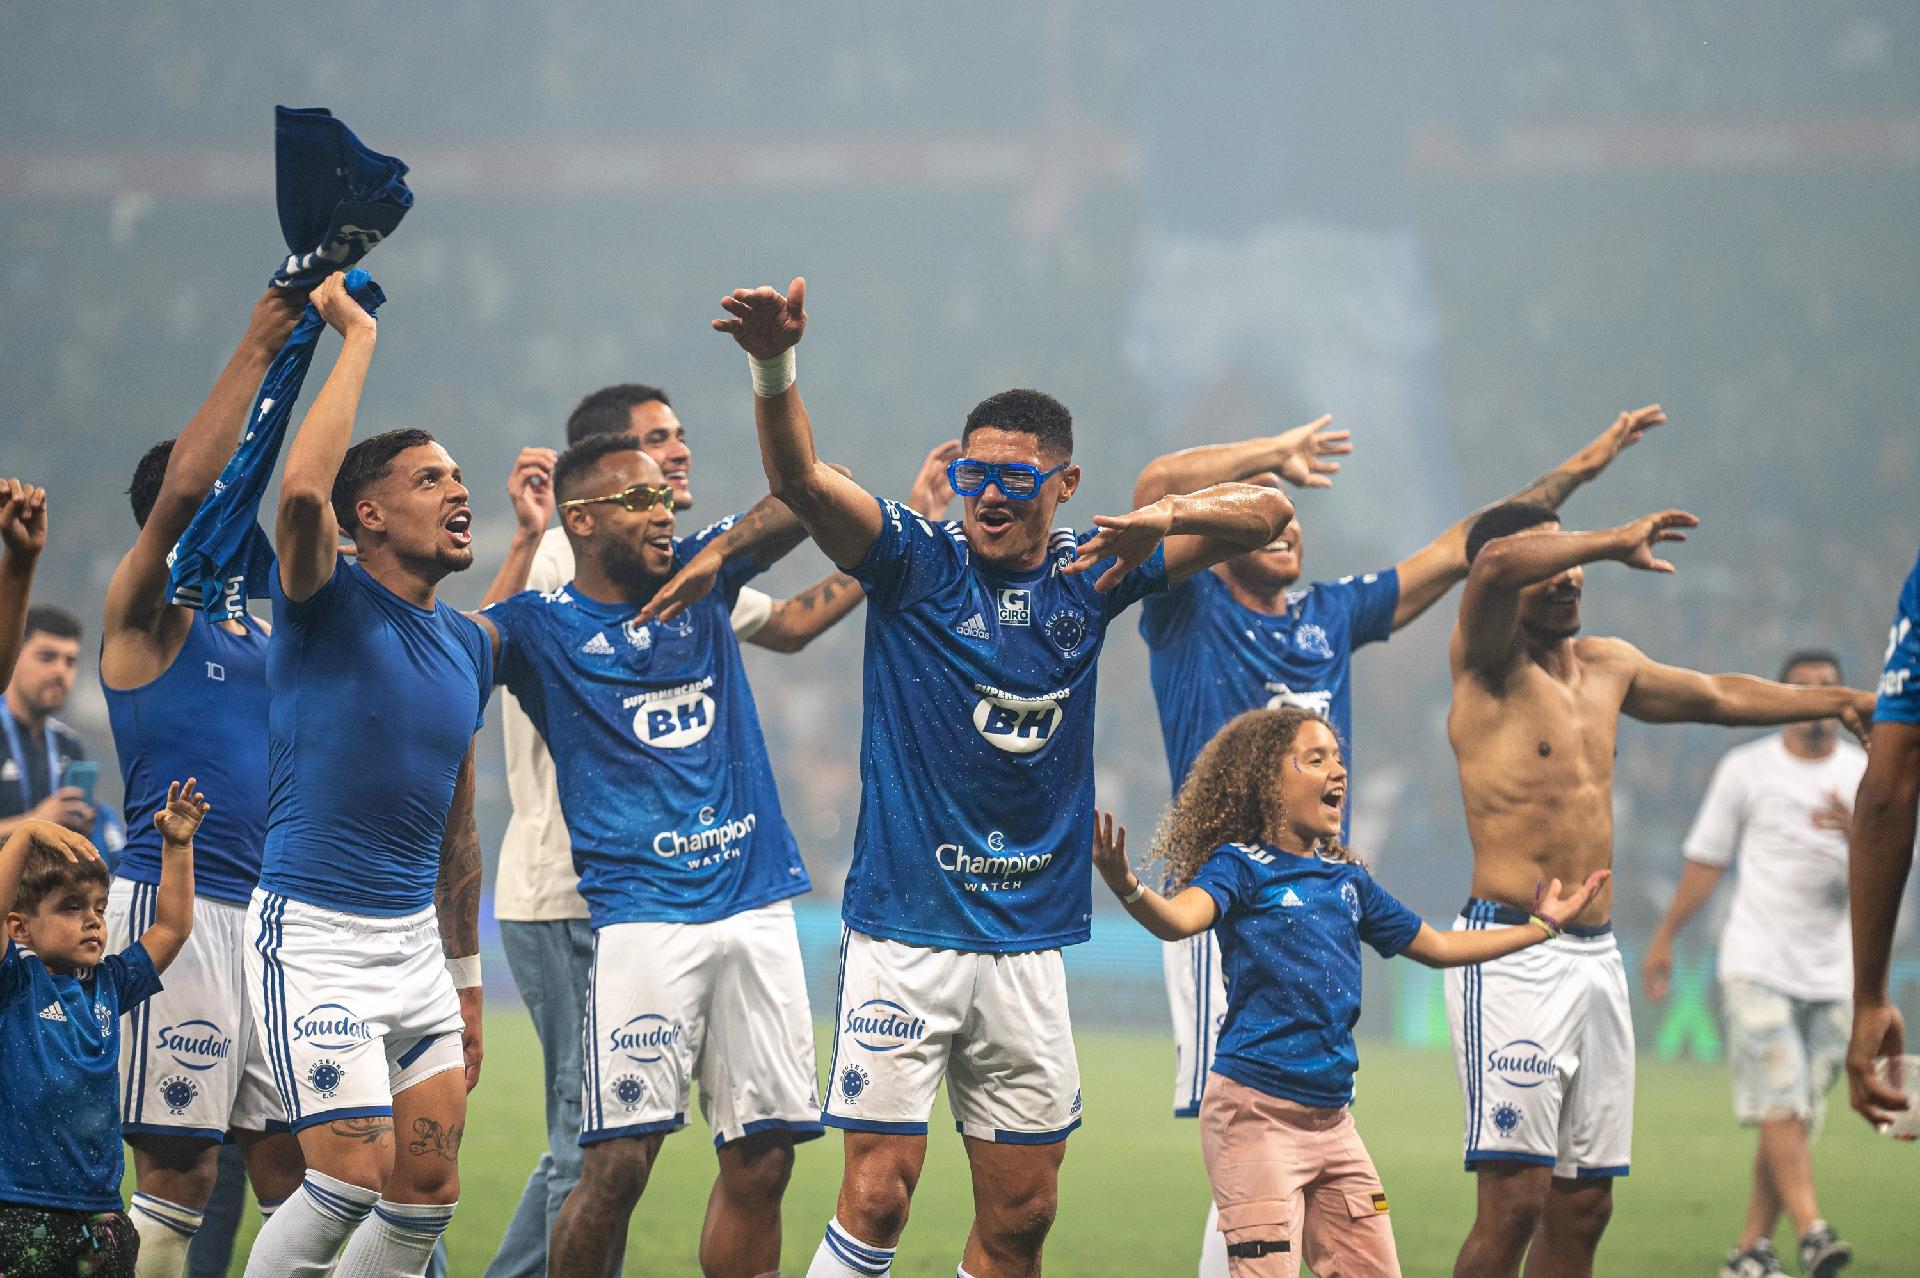 Sete jogos capitais: os últimos passos da missão do Cruzeiro na Série B